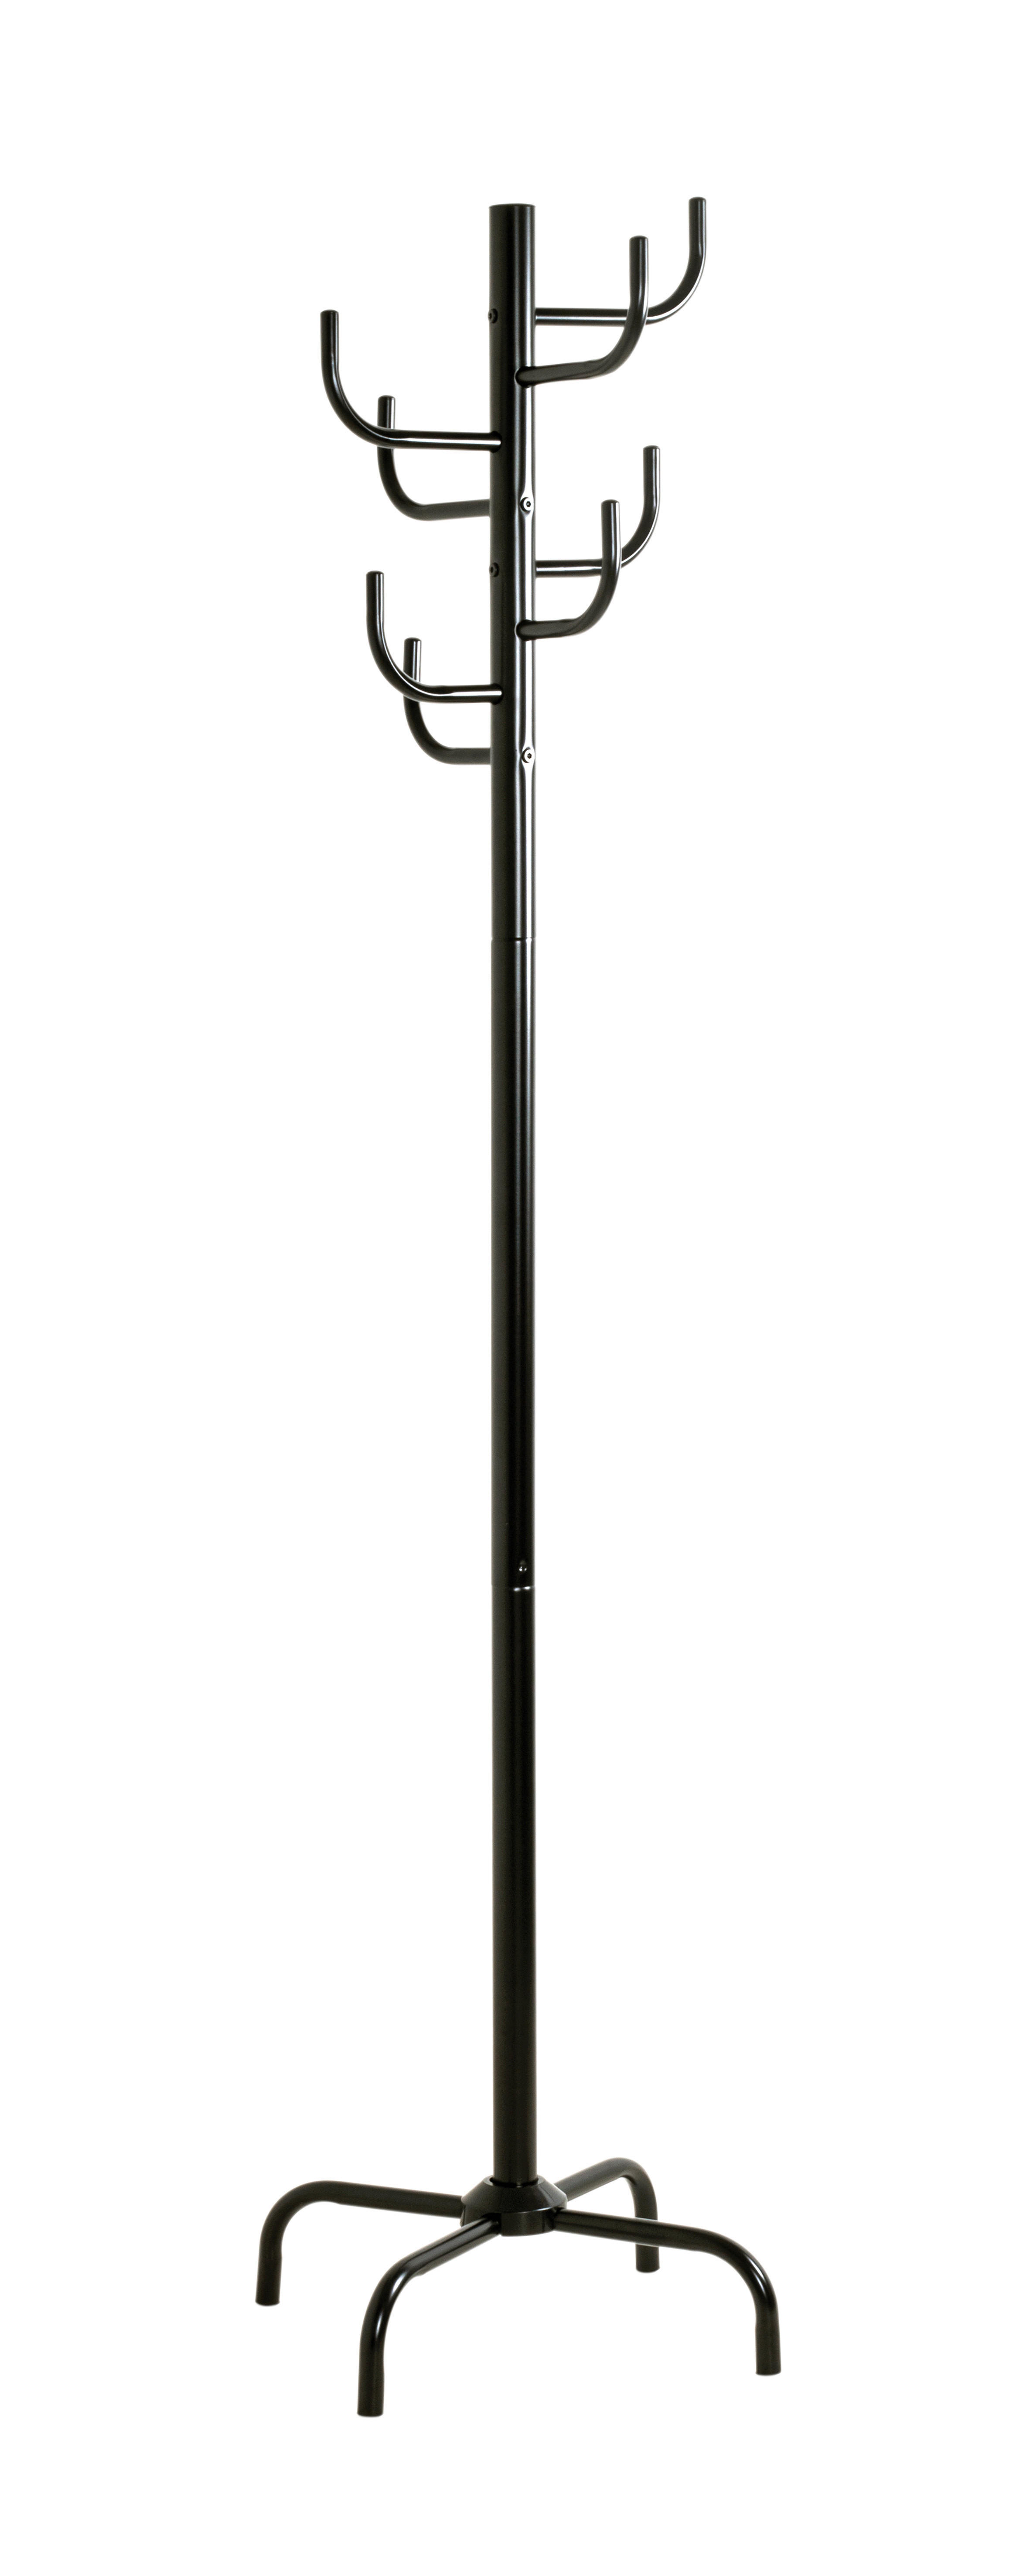 Garderobenständer  schwarz lackiert H/D: ca. 180x48 cm Cactus_Garderobenständer 43100 - schwarz (48,00/180,00cm)